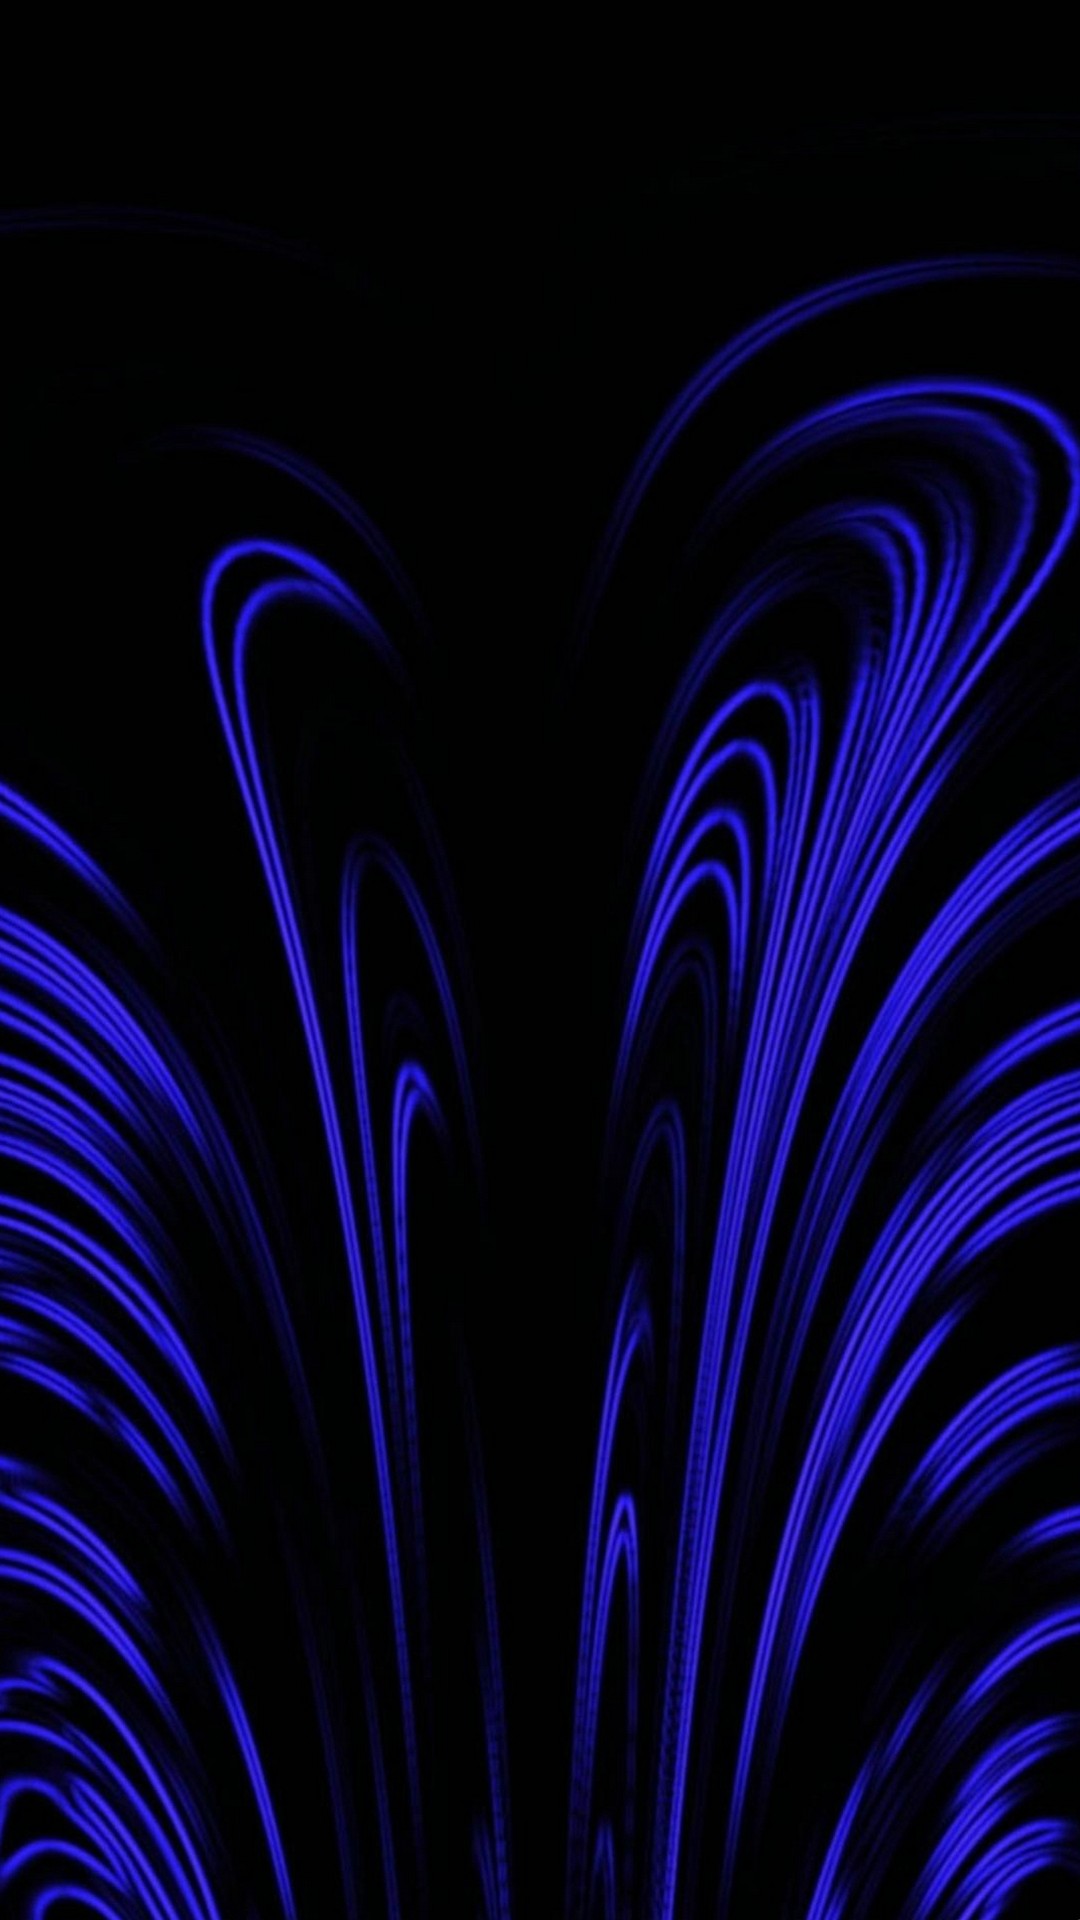 android用の抽象的な壁紙,青い,黒,紫の,エレクトリックブルー,光